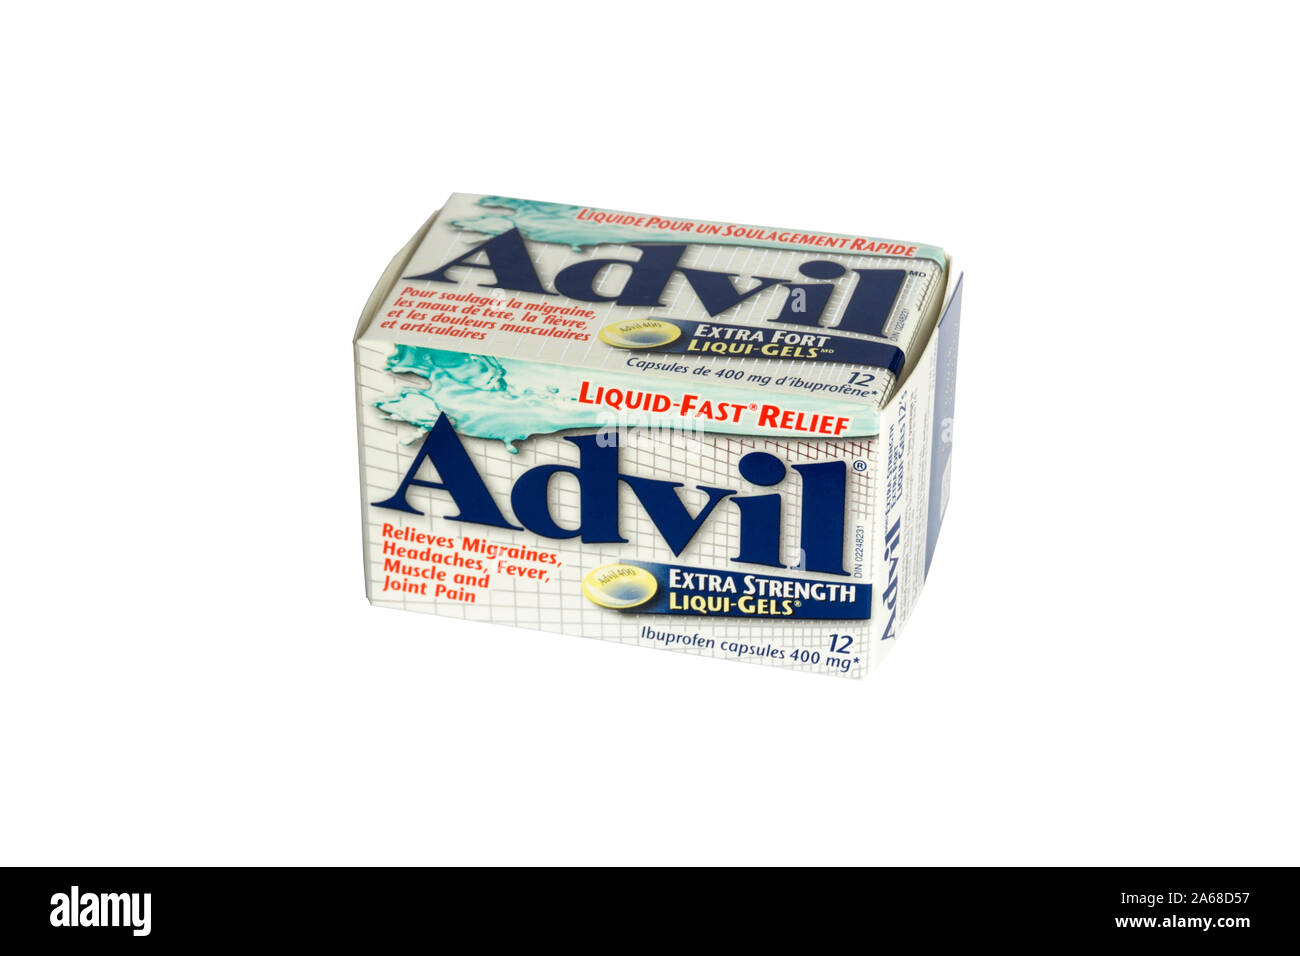 Una scatola di Advil Ibuprofen capsule. Advil è un nome commerciale di ibuprofene, un farmaco antiinfiammatorio non steroideo. Foto Stock